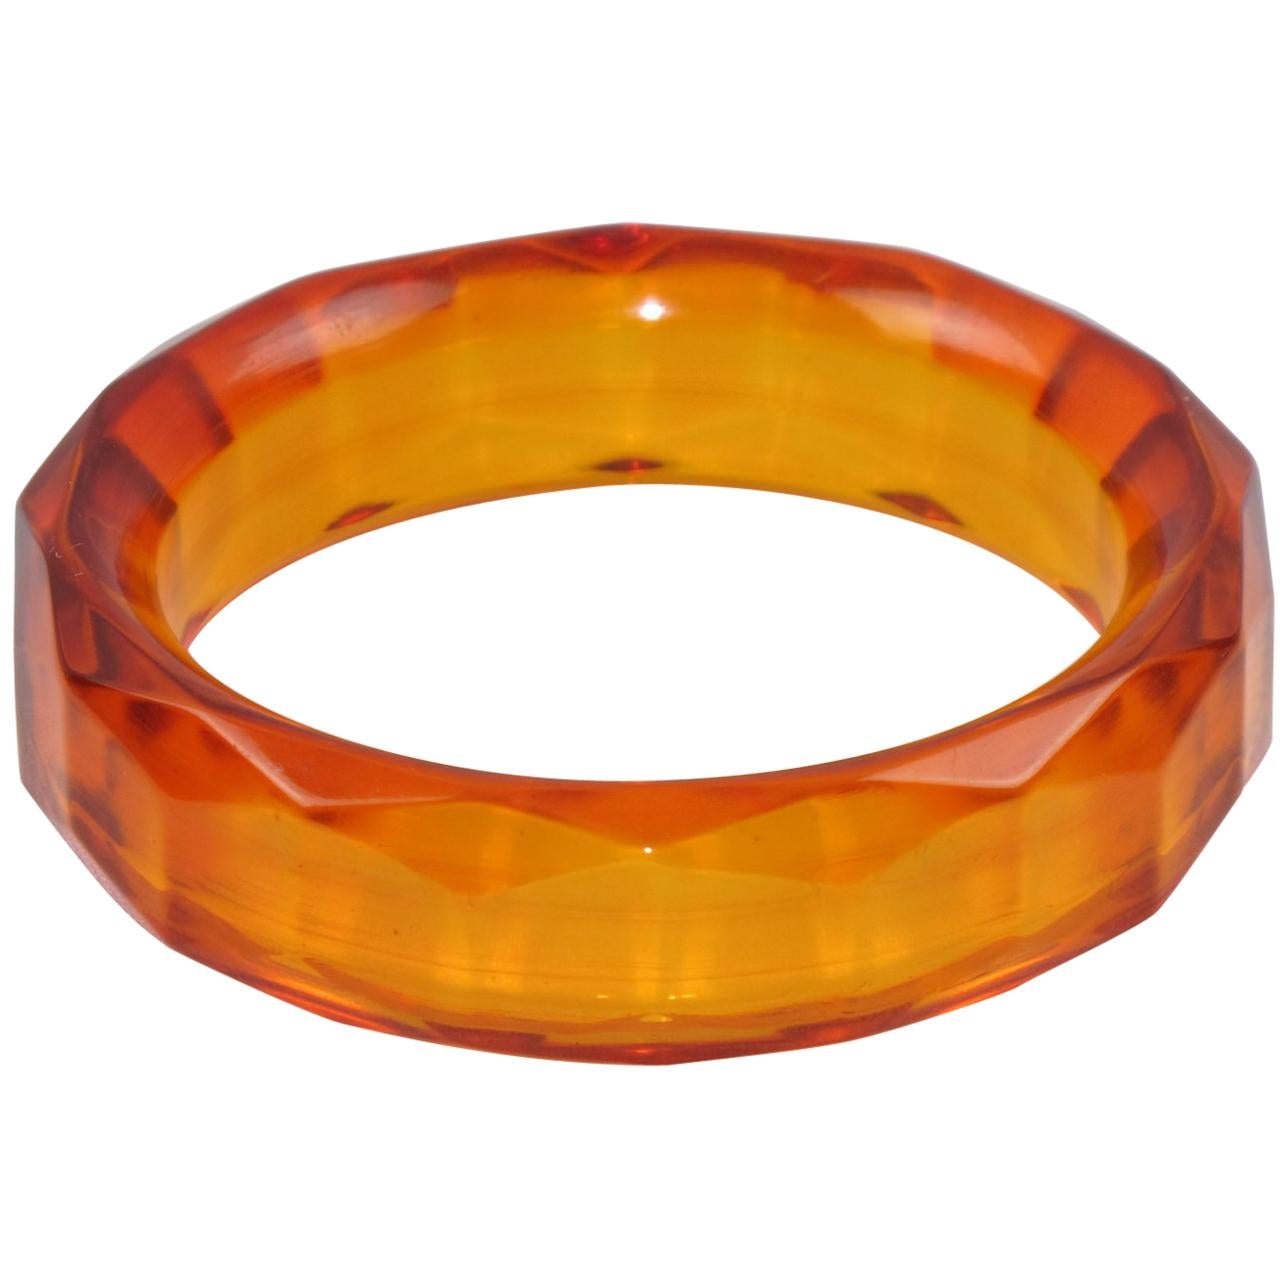 Bakelite Bracelet Bangle Faceted Carved Design Transparent Prystal Orangeade